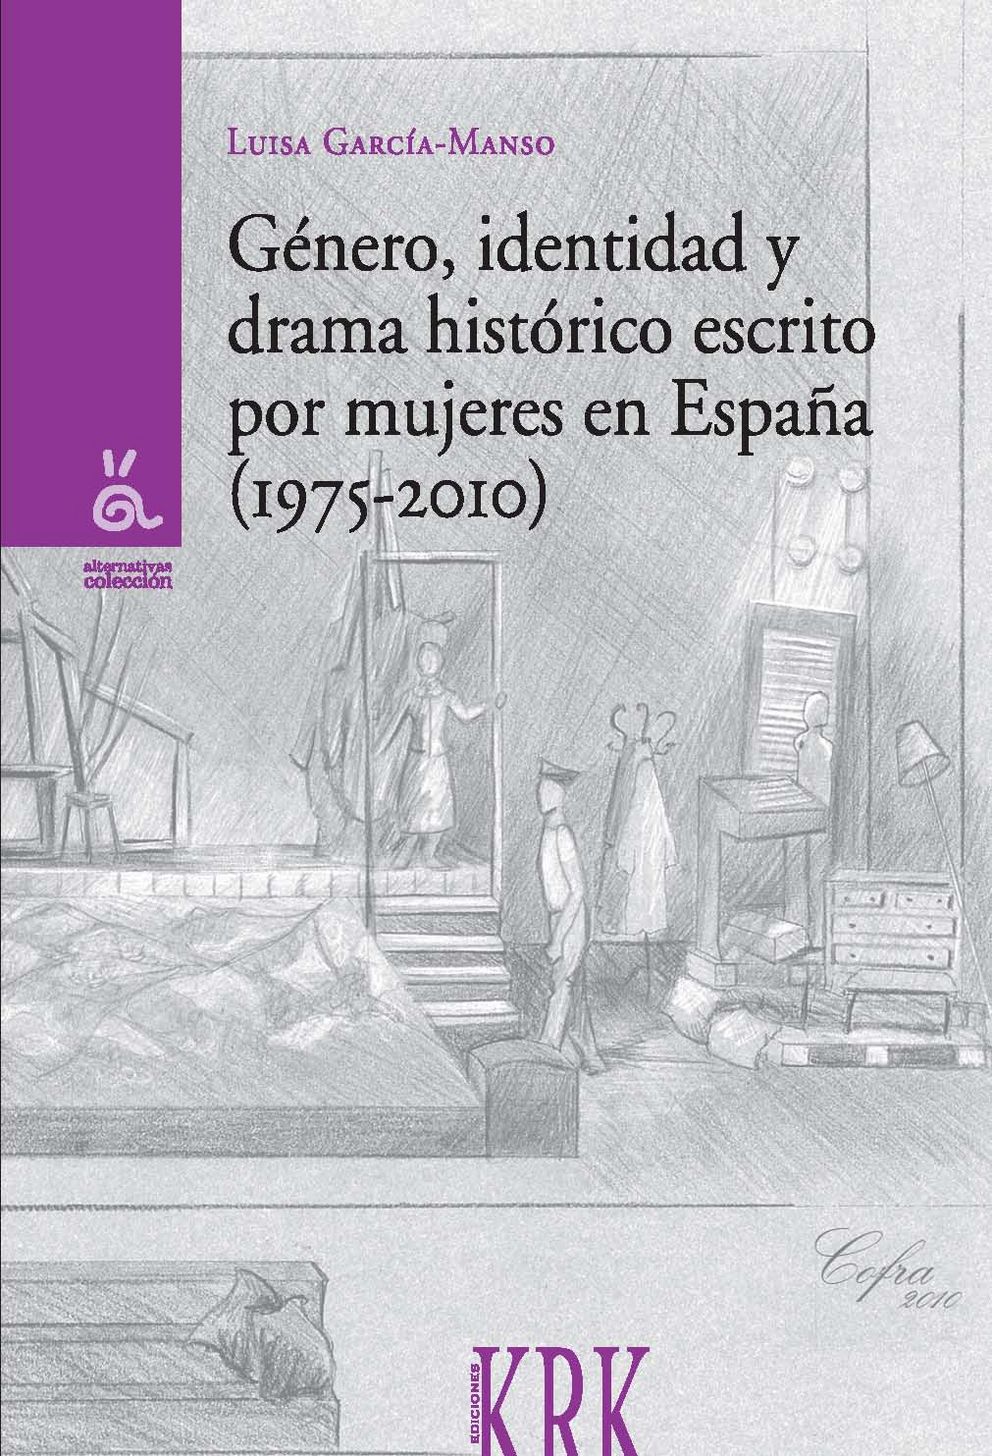 Cover "Género, identidad y drama histórico escrito por mujeres en España"